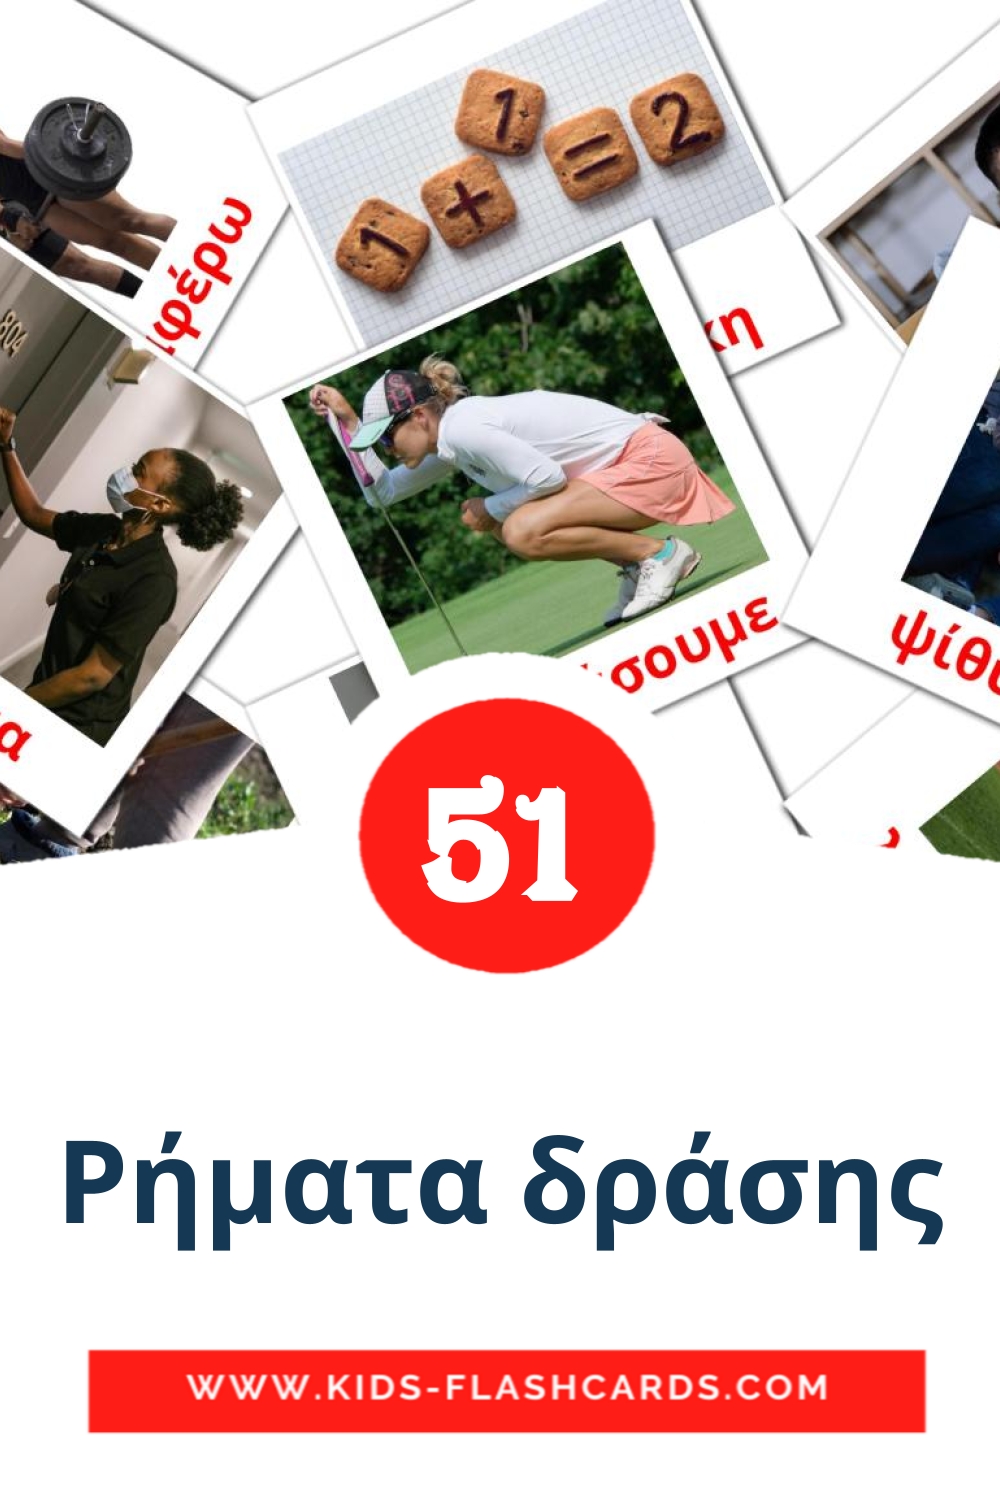 54 Ρήματα δράσης Bildkarten für den Kindergarten auf Griechisch